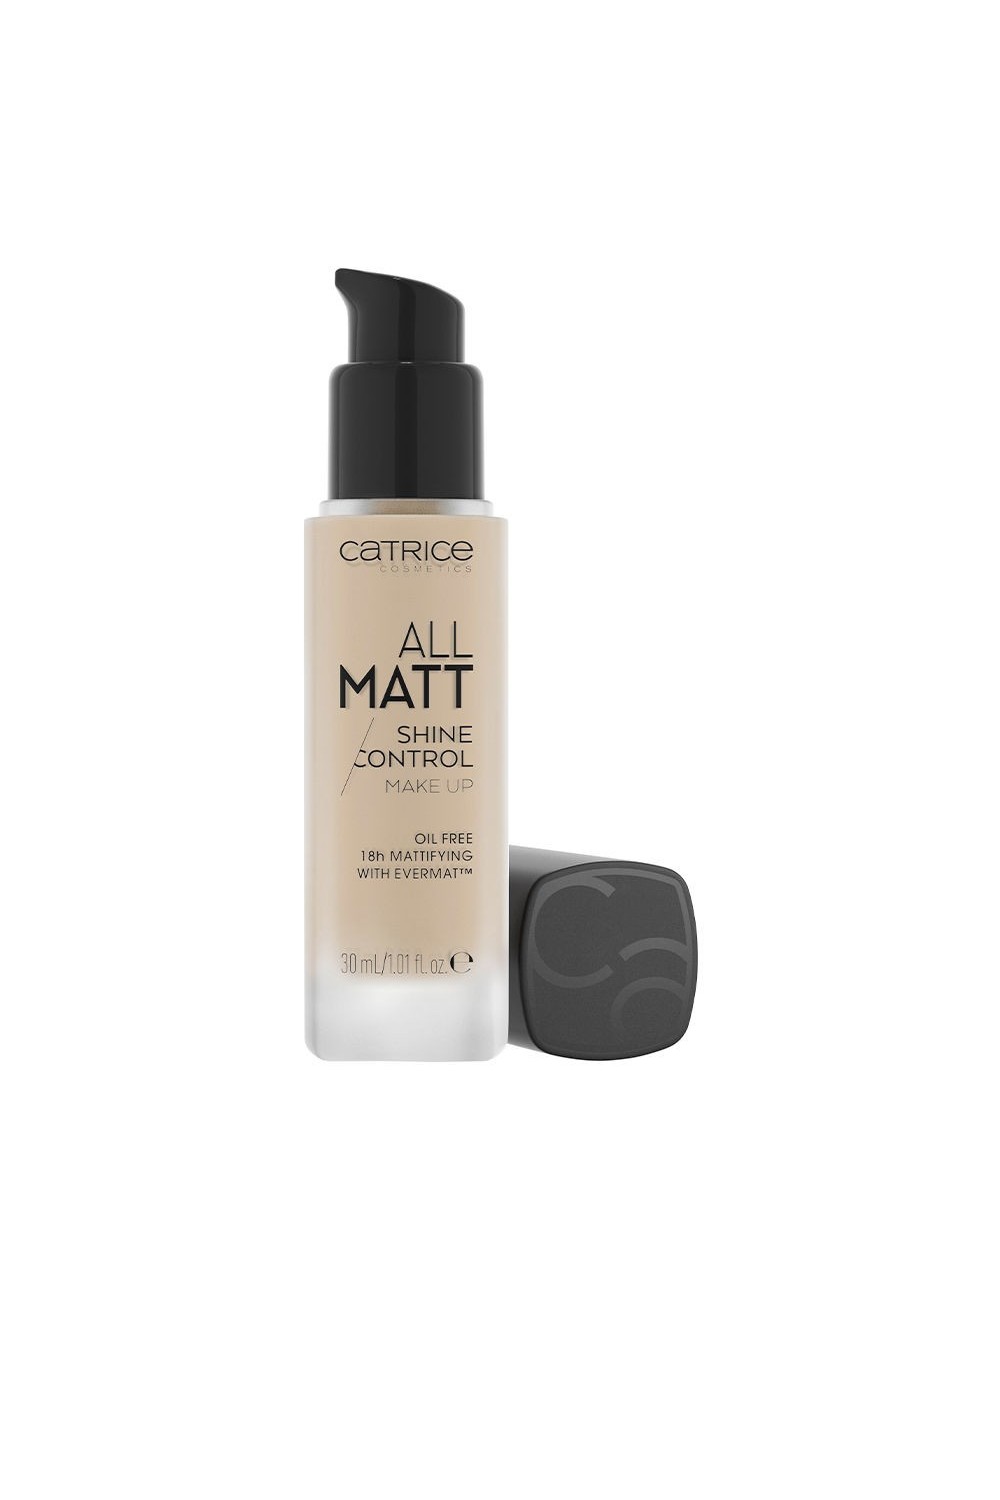 Catrice All Matt Shine Control Makeup 010n-Neutral Light Beige 30ml